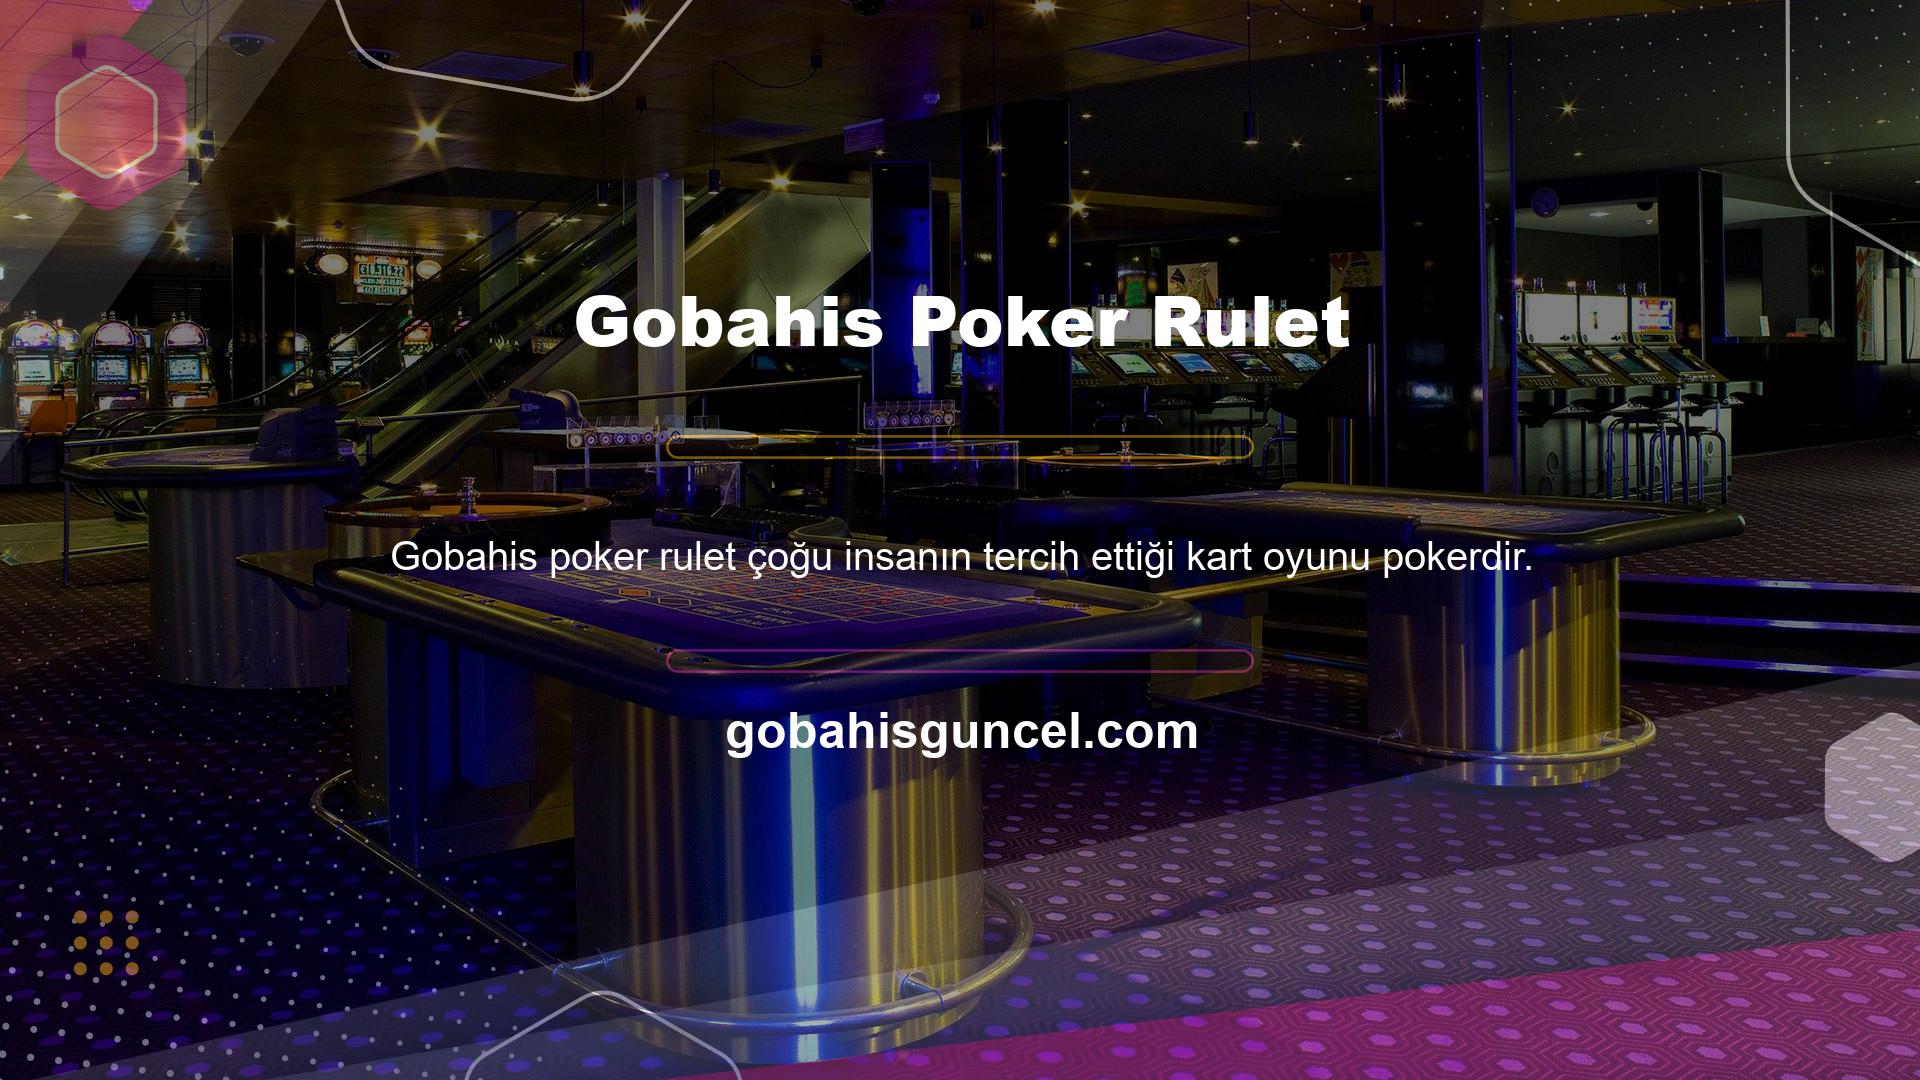 Gobahis poker ruletinin birkaç farklı çeşidi mevcuttur